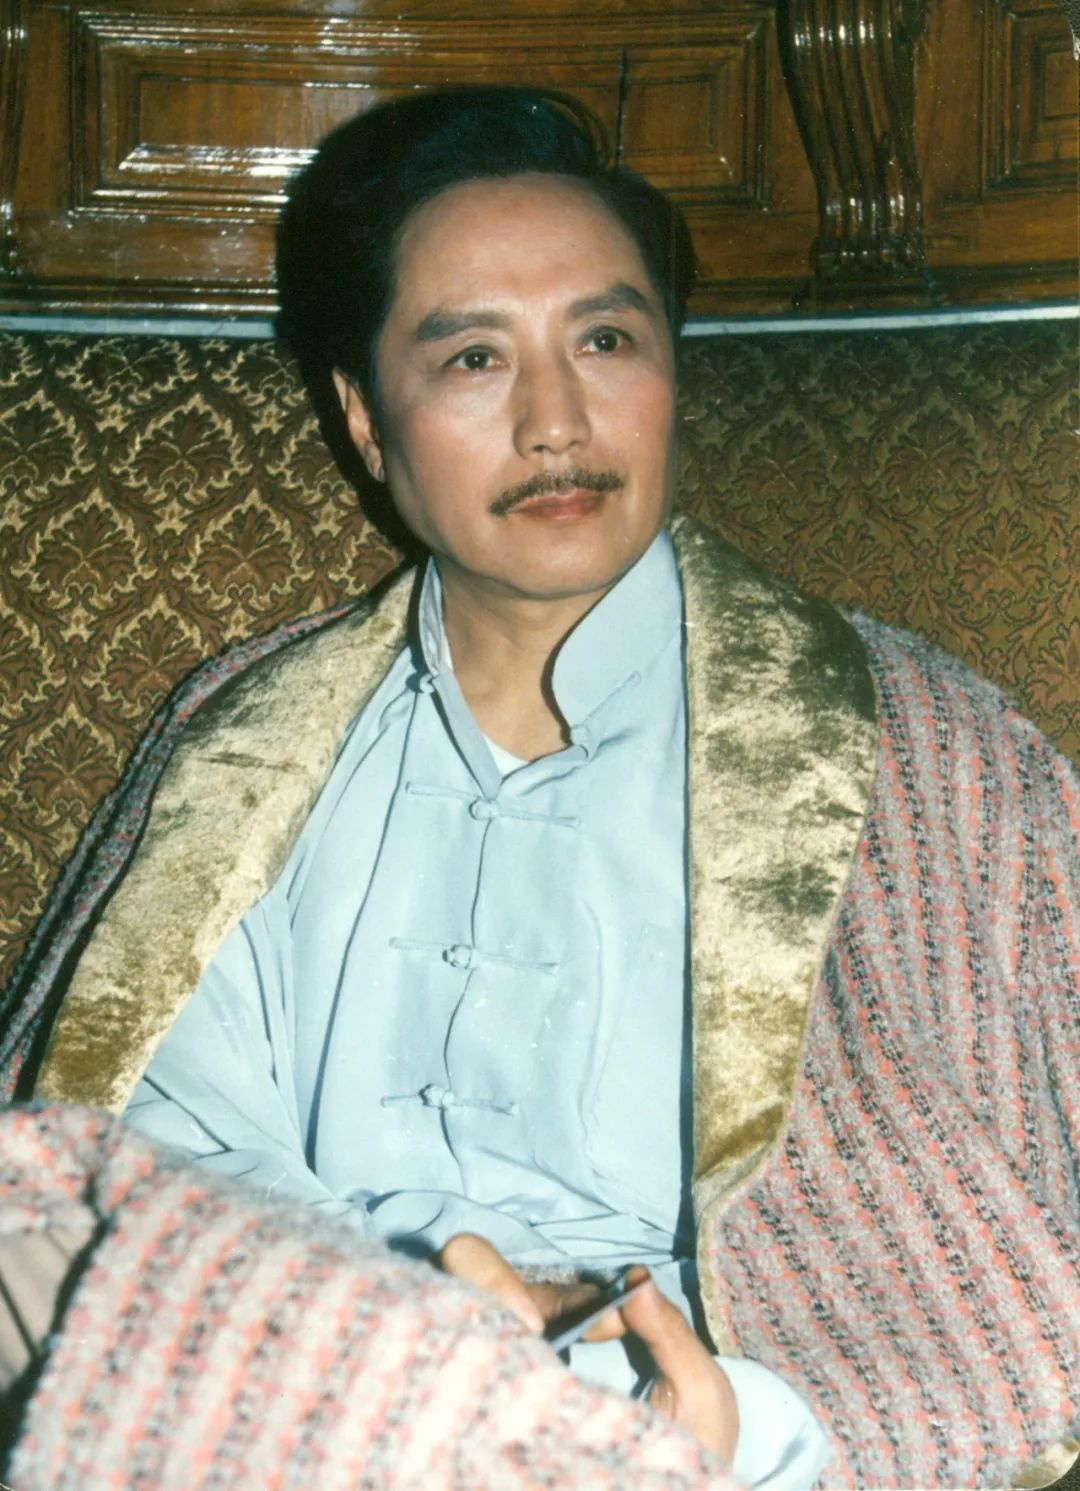 著名演员严翔去世 曾出演《朱自清》《城南旧事》